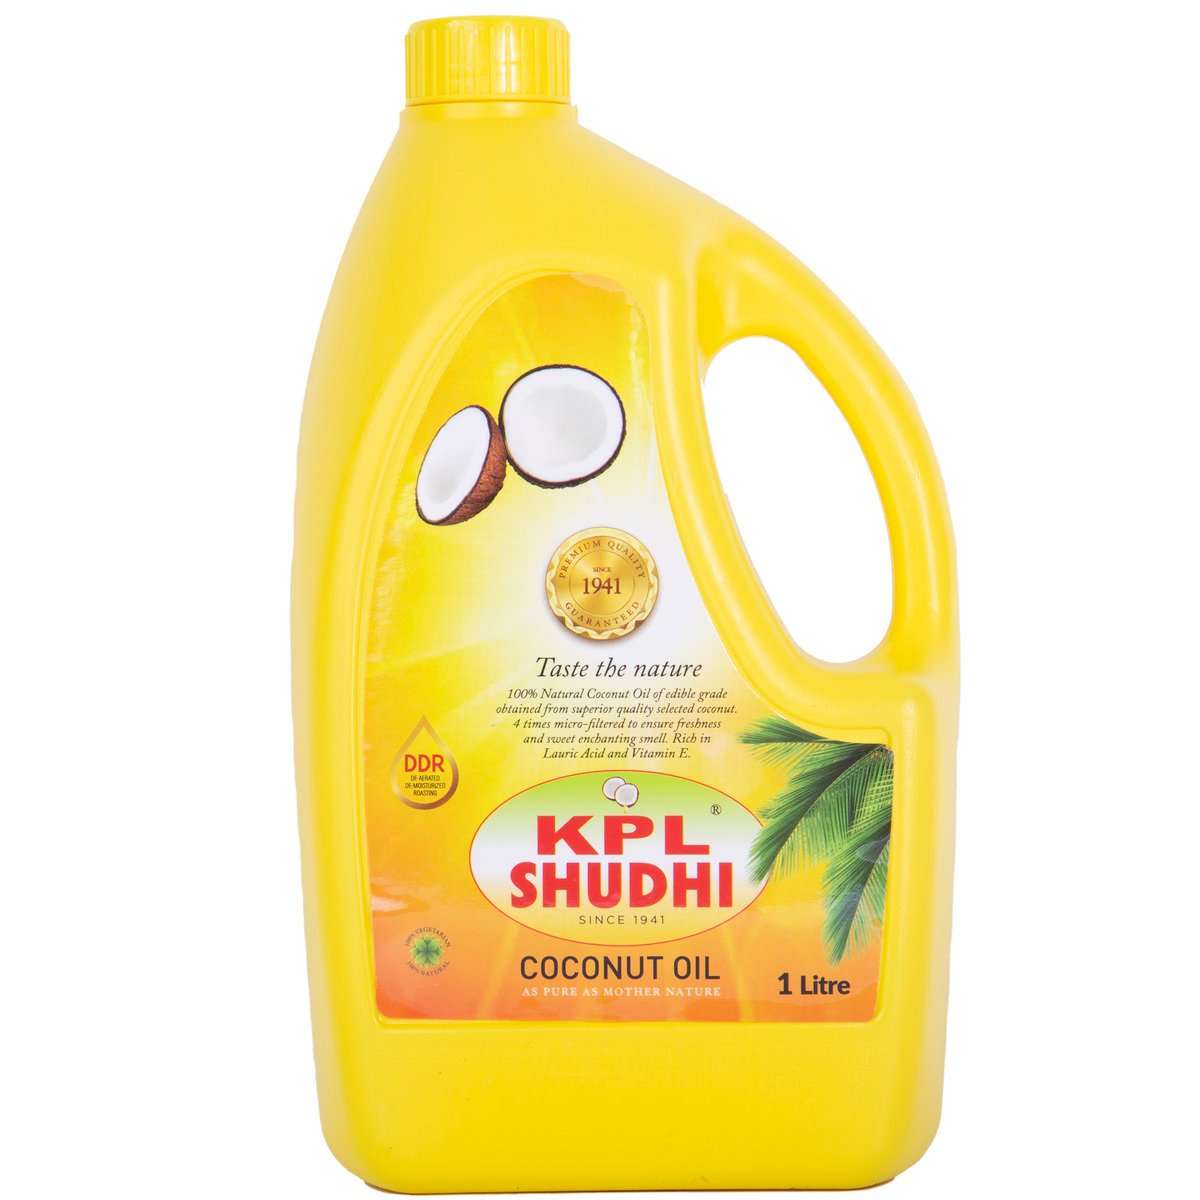 Buy KPL Shudhi Coconut Oil 1 Litre Online at Best Price | Coconut Oil | Lulu UAE in UAE